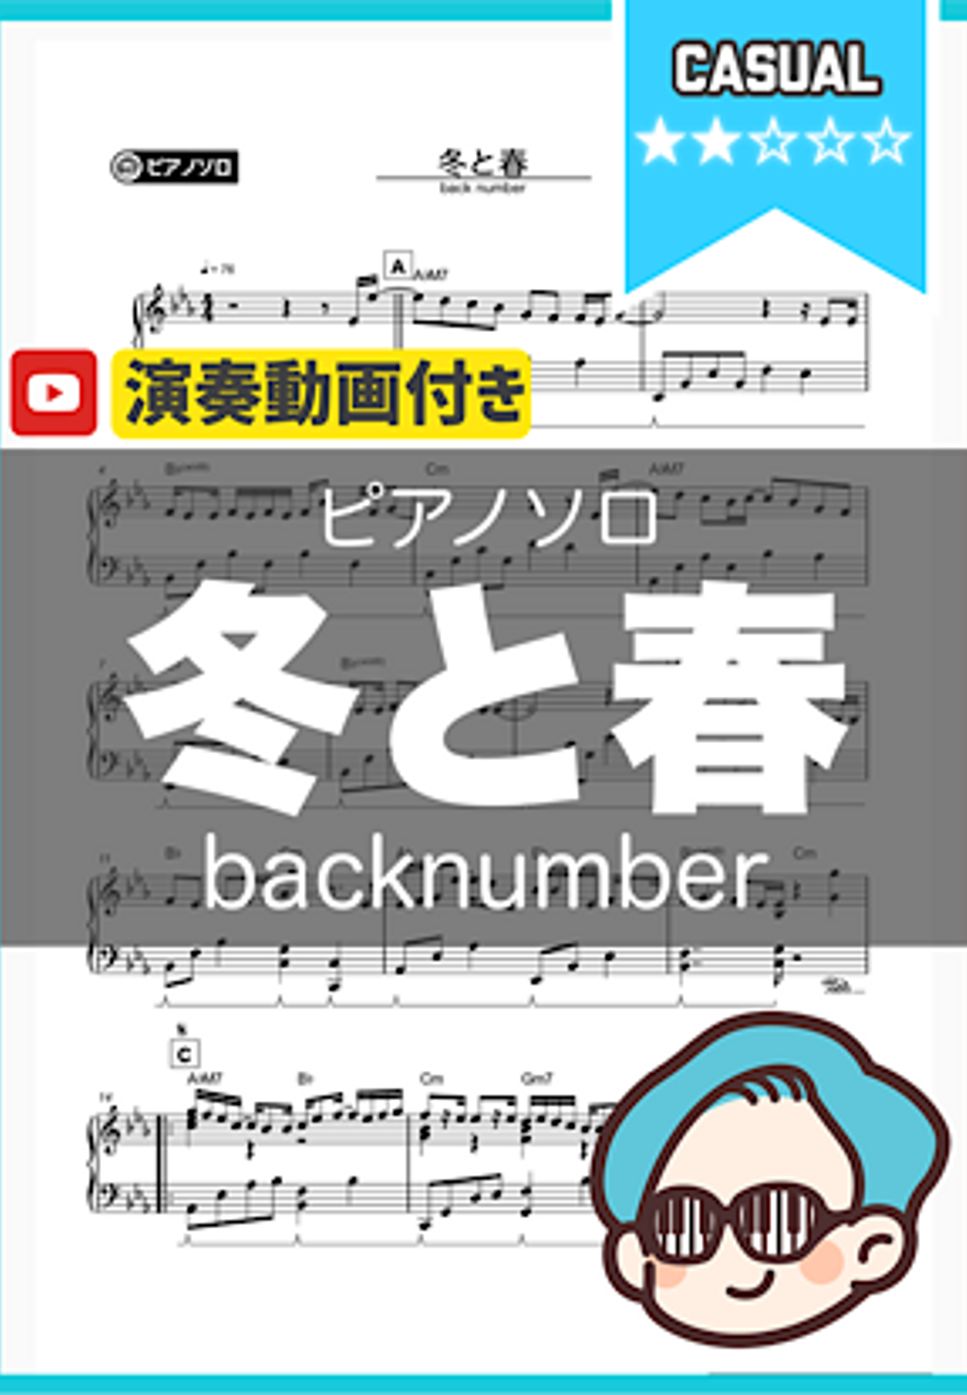 backnumber - 冬と春 by シータピアノ